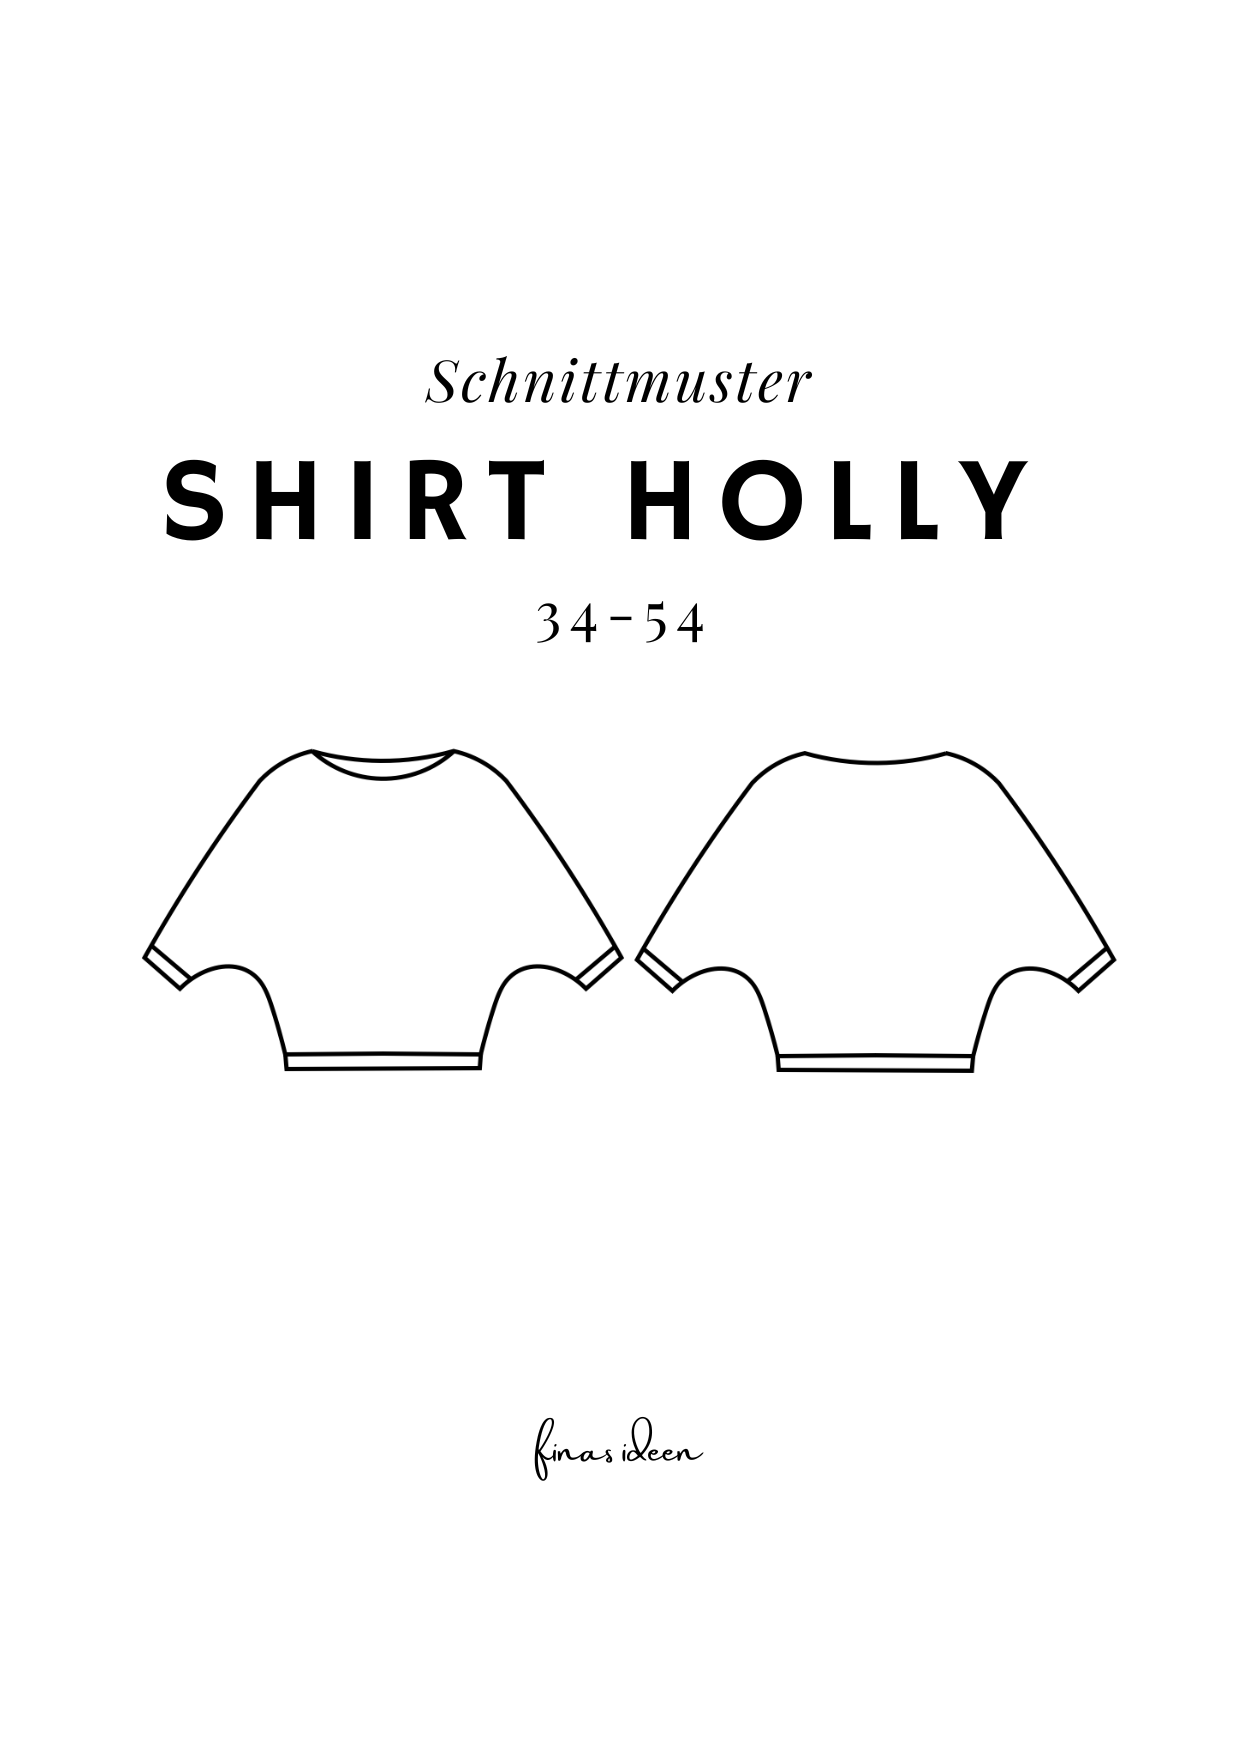 Holly (Papierschnittmuster) - FinasIdeen